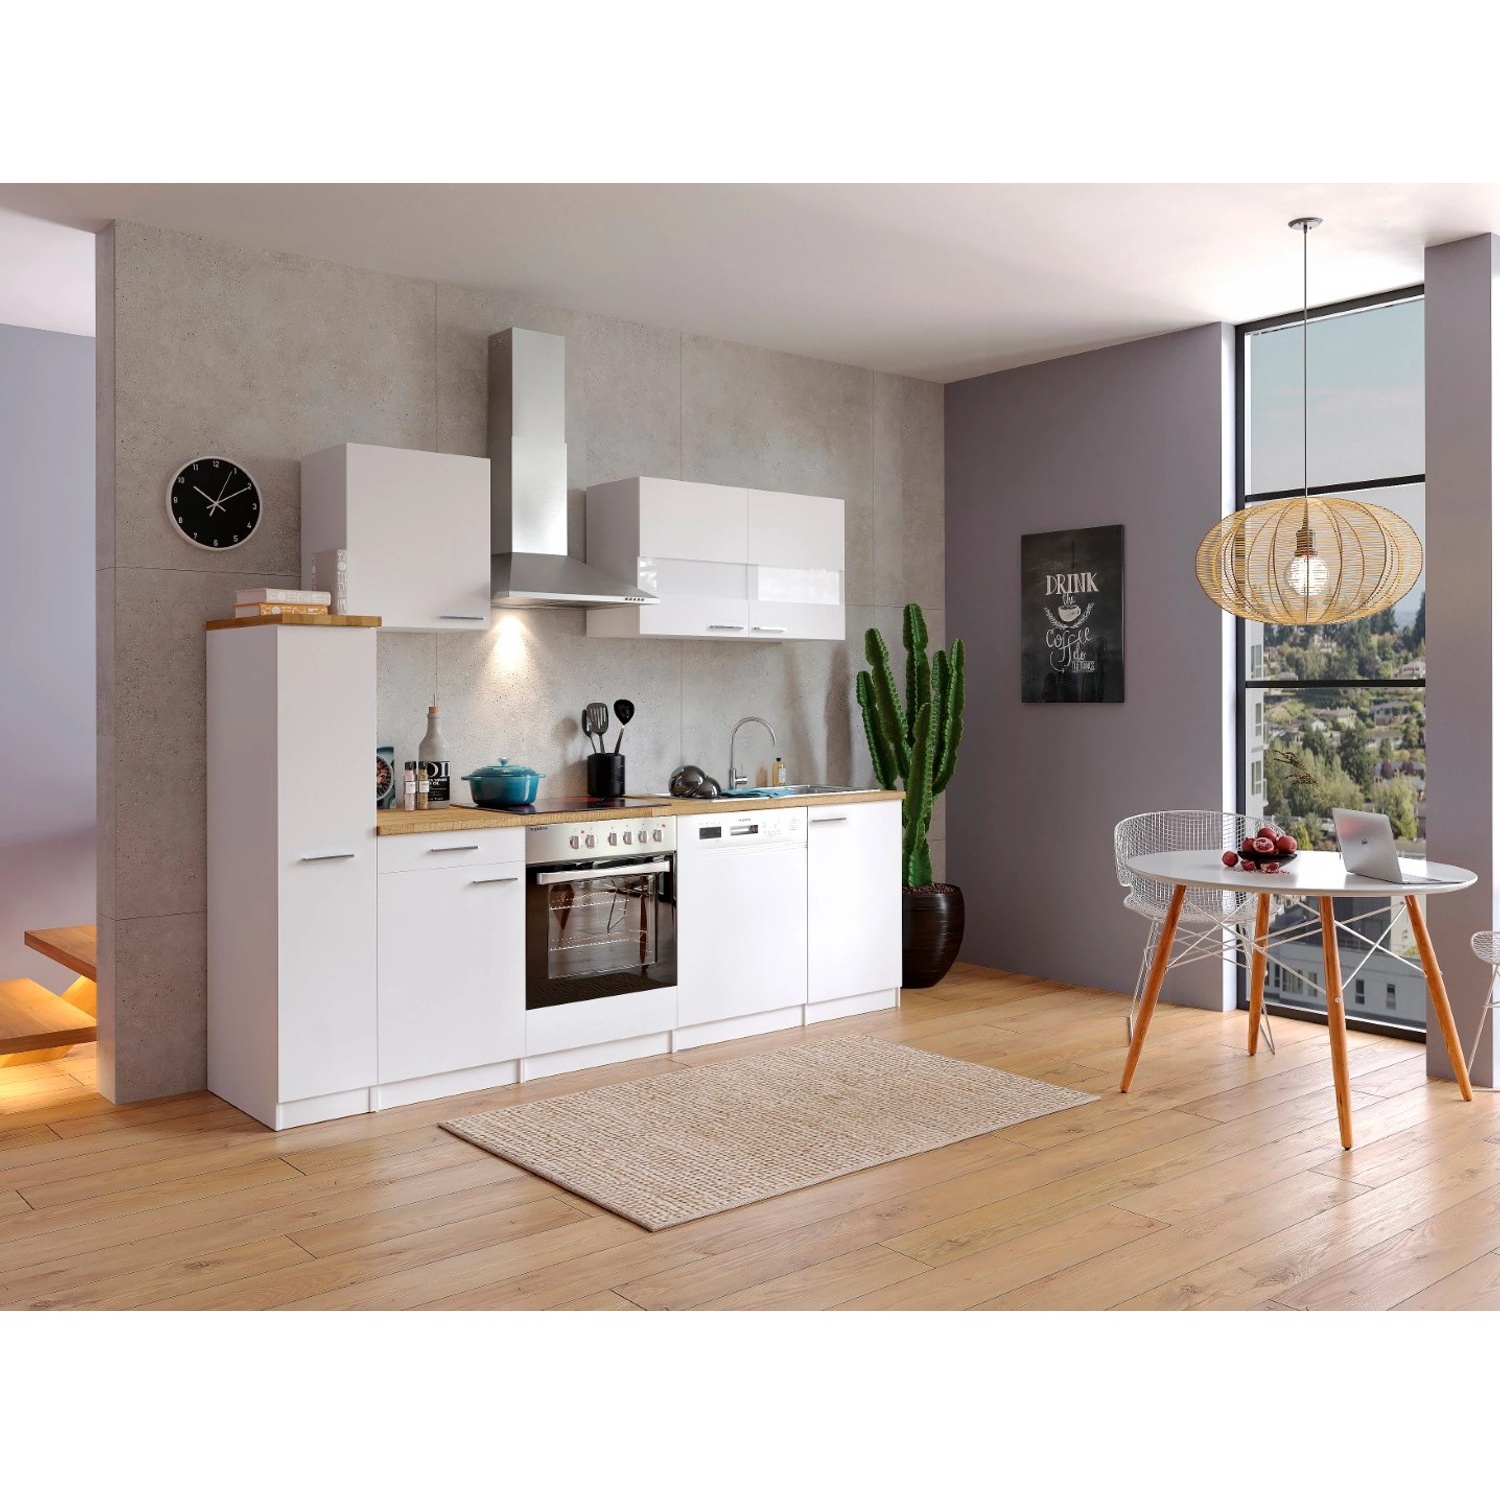 Bild von Küchenzeile Malia E-Geräte 250 cm weiß